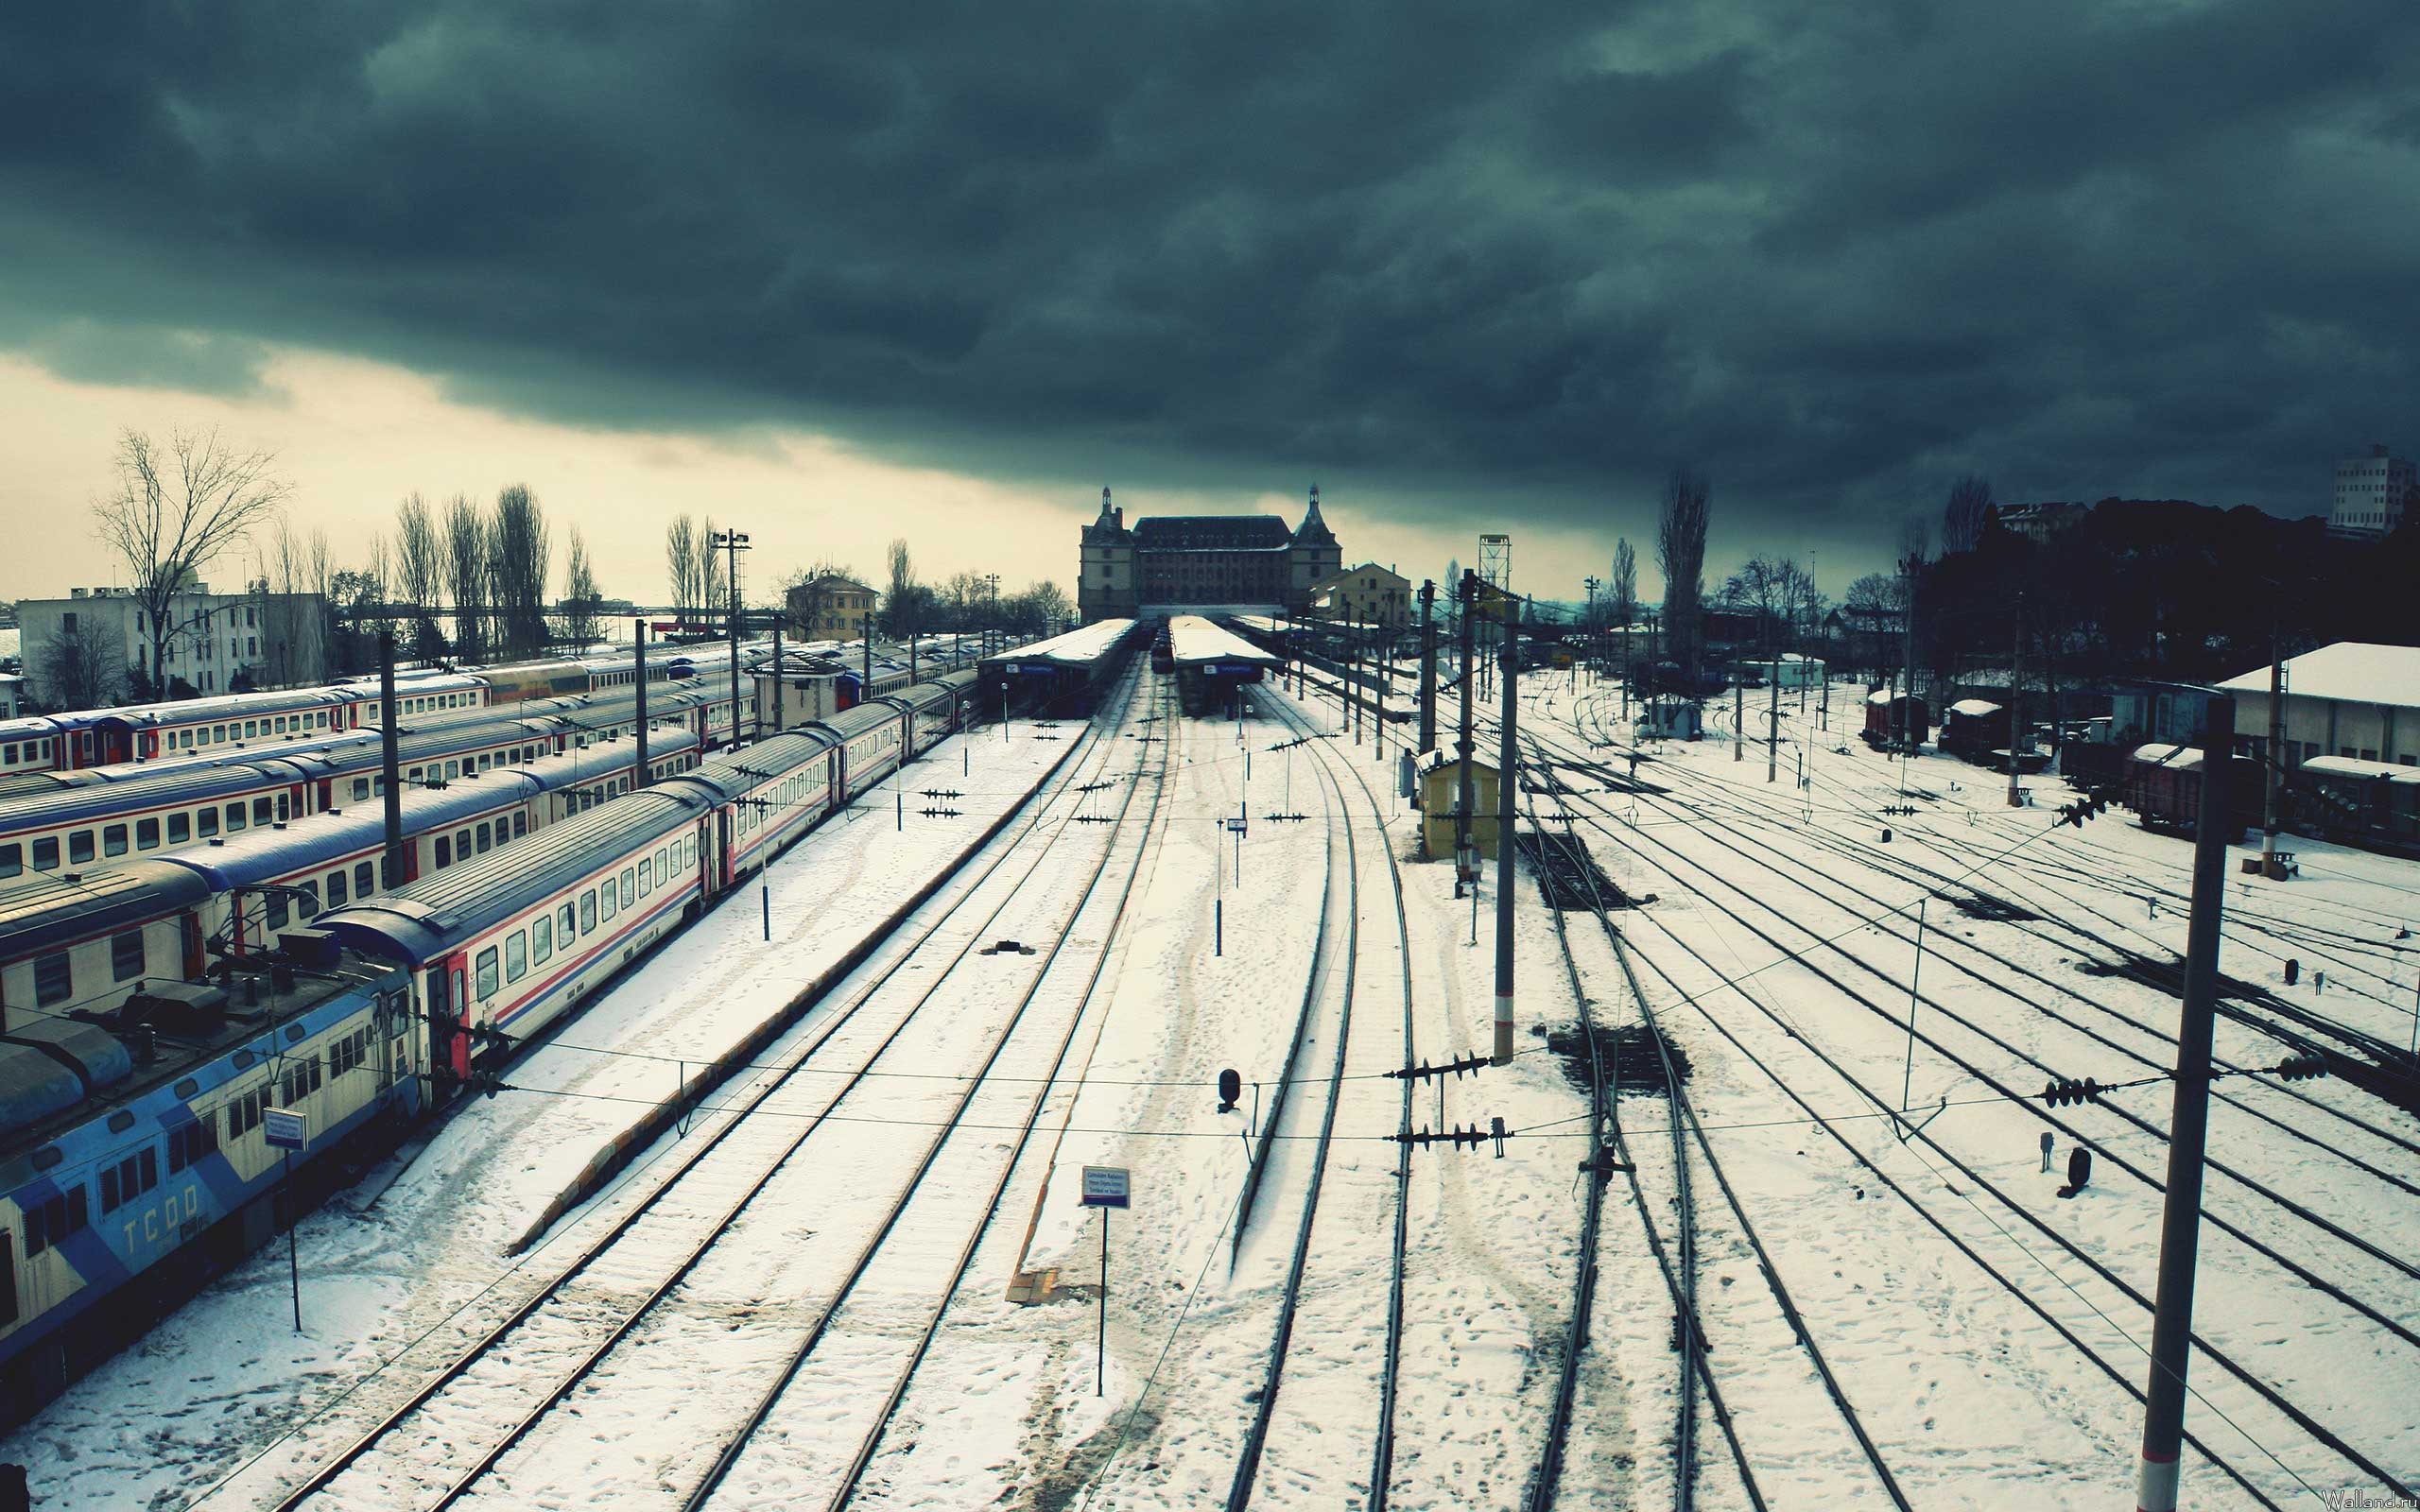 Fond d'ecran Gare voies ferres sous la neige